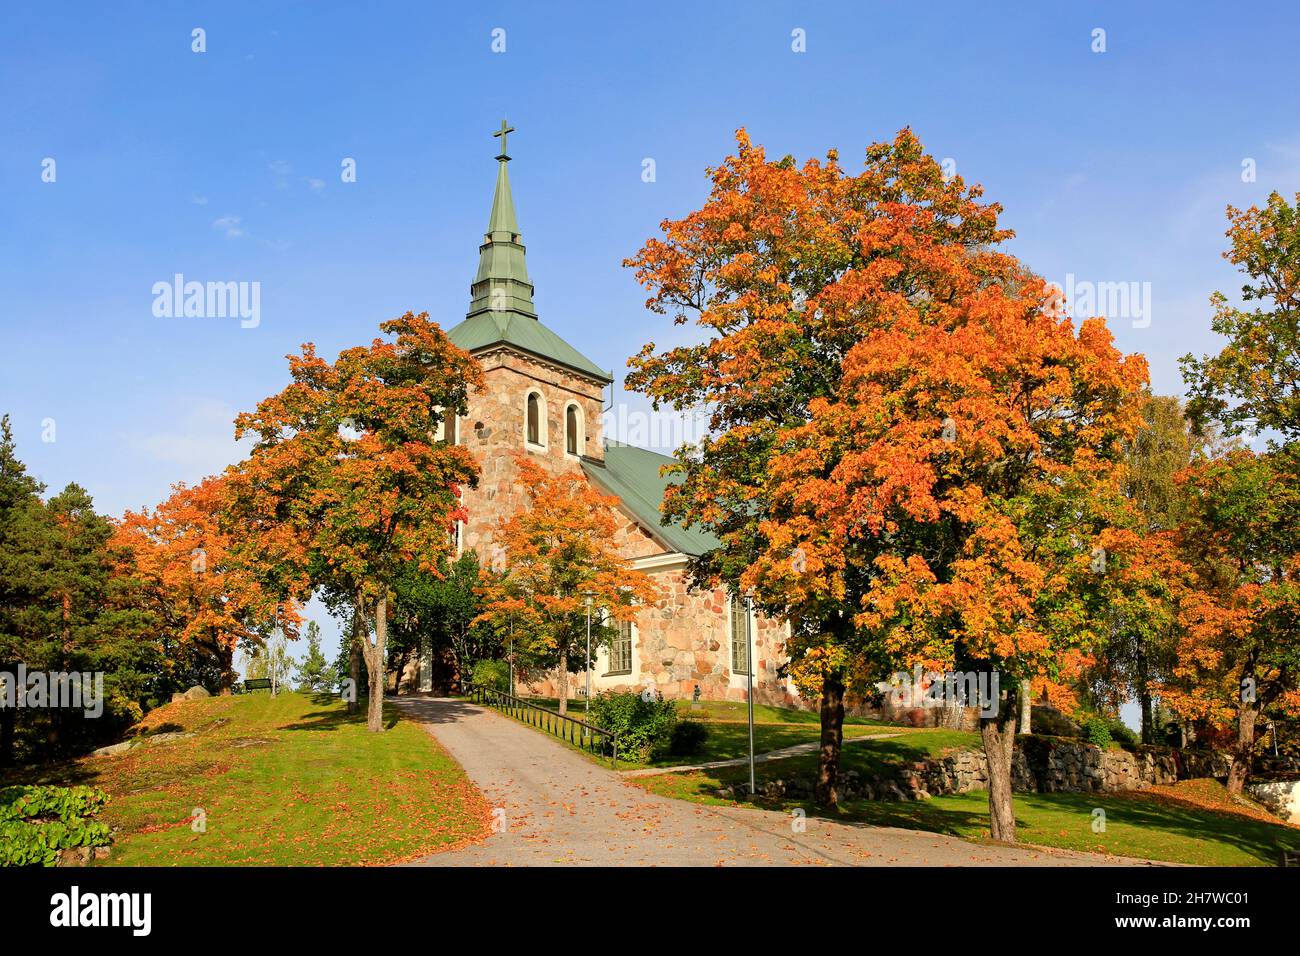 Iglesia de Uskela, Salo, Finlandia en un día soleado de septiembre. La iglesia de piedra fue diseñada por Carl Ludvig Engel y construida en 1832, la torre en 1860. Foto de stock